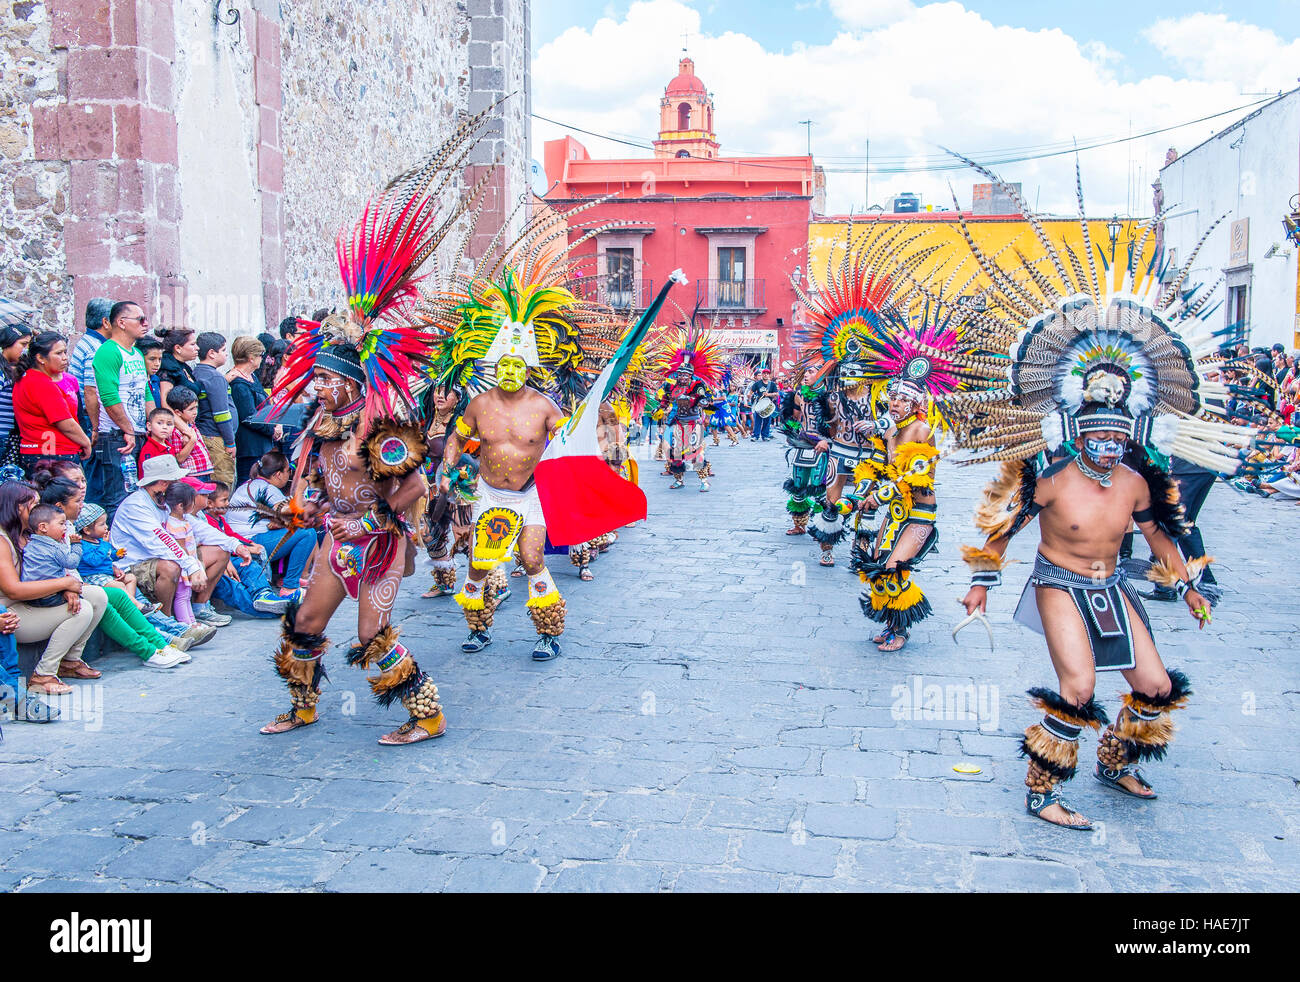 Les Amérindiens avec costume traditionnel, participer au festival de Valle del Maiz à San Miguel de Allende, Mexique. Banque D'Images